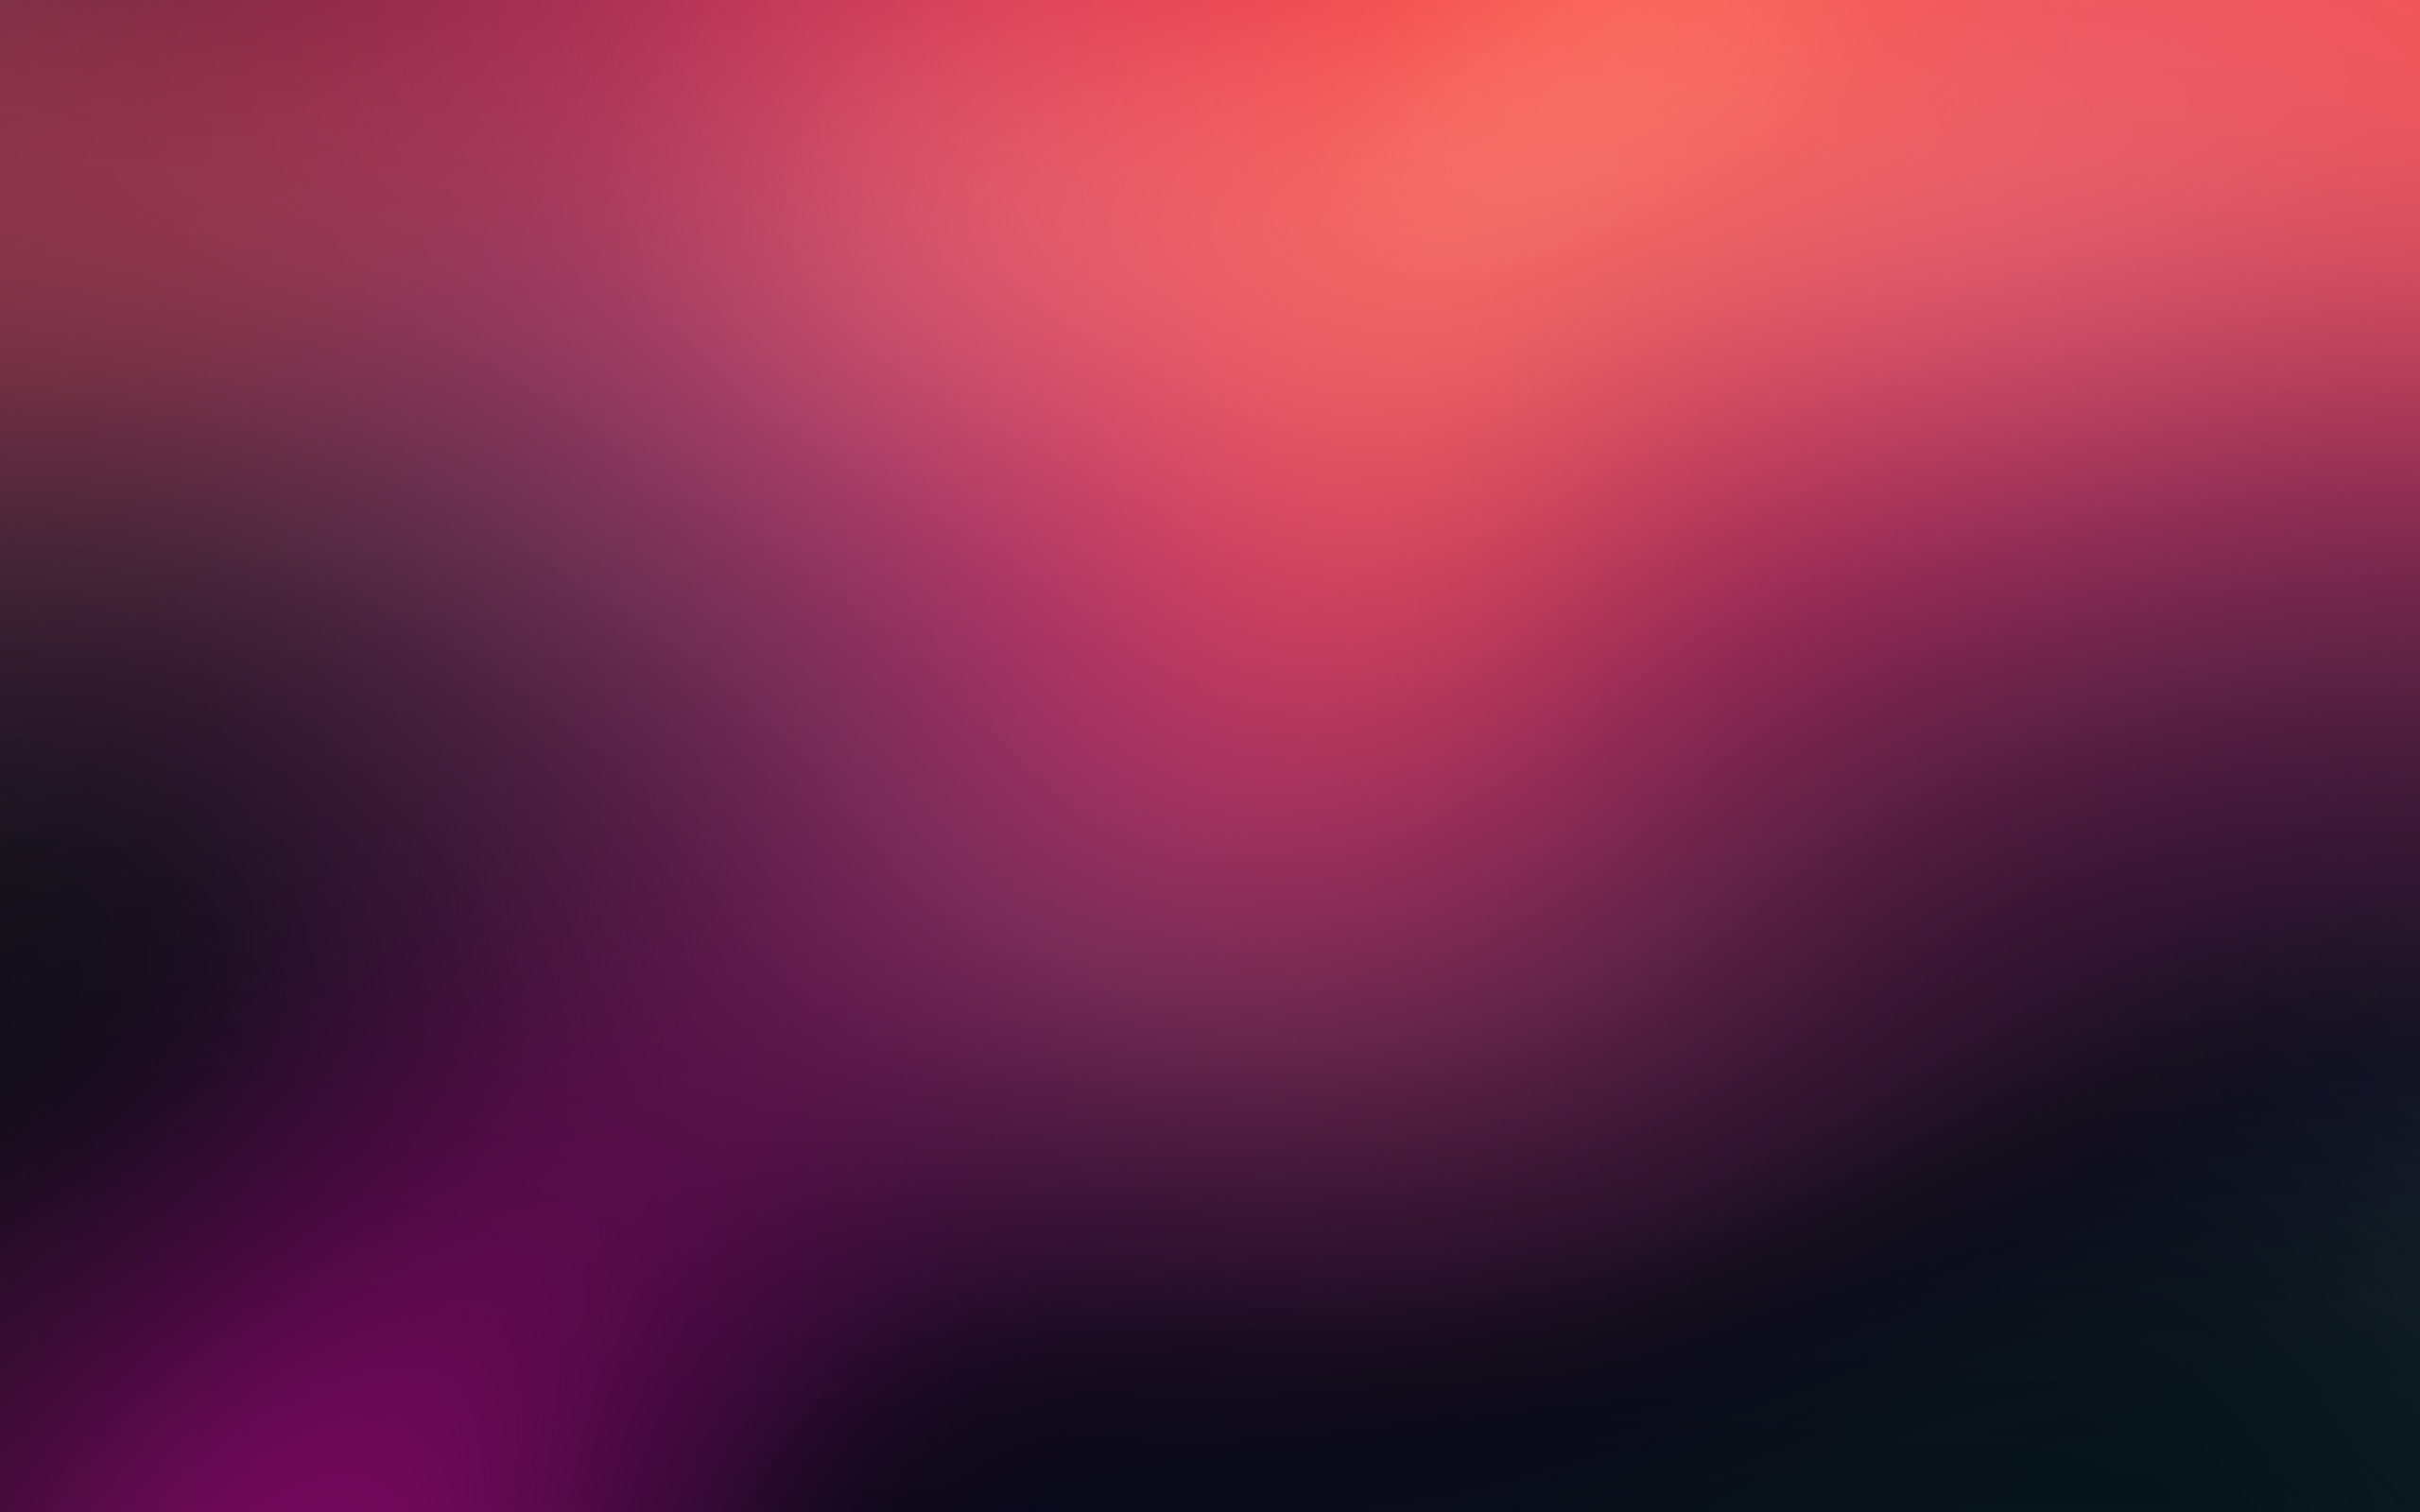 gradient, blurred